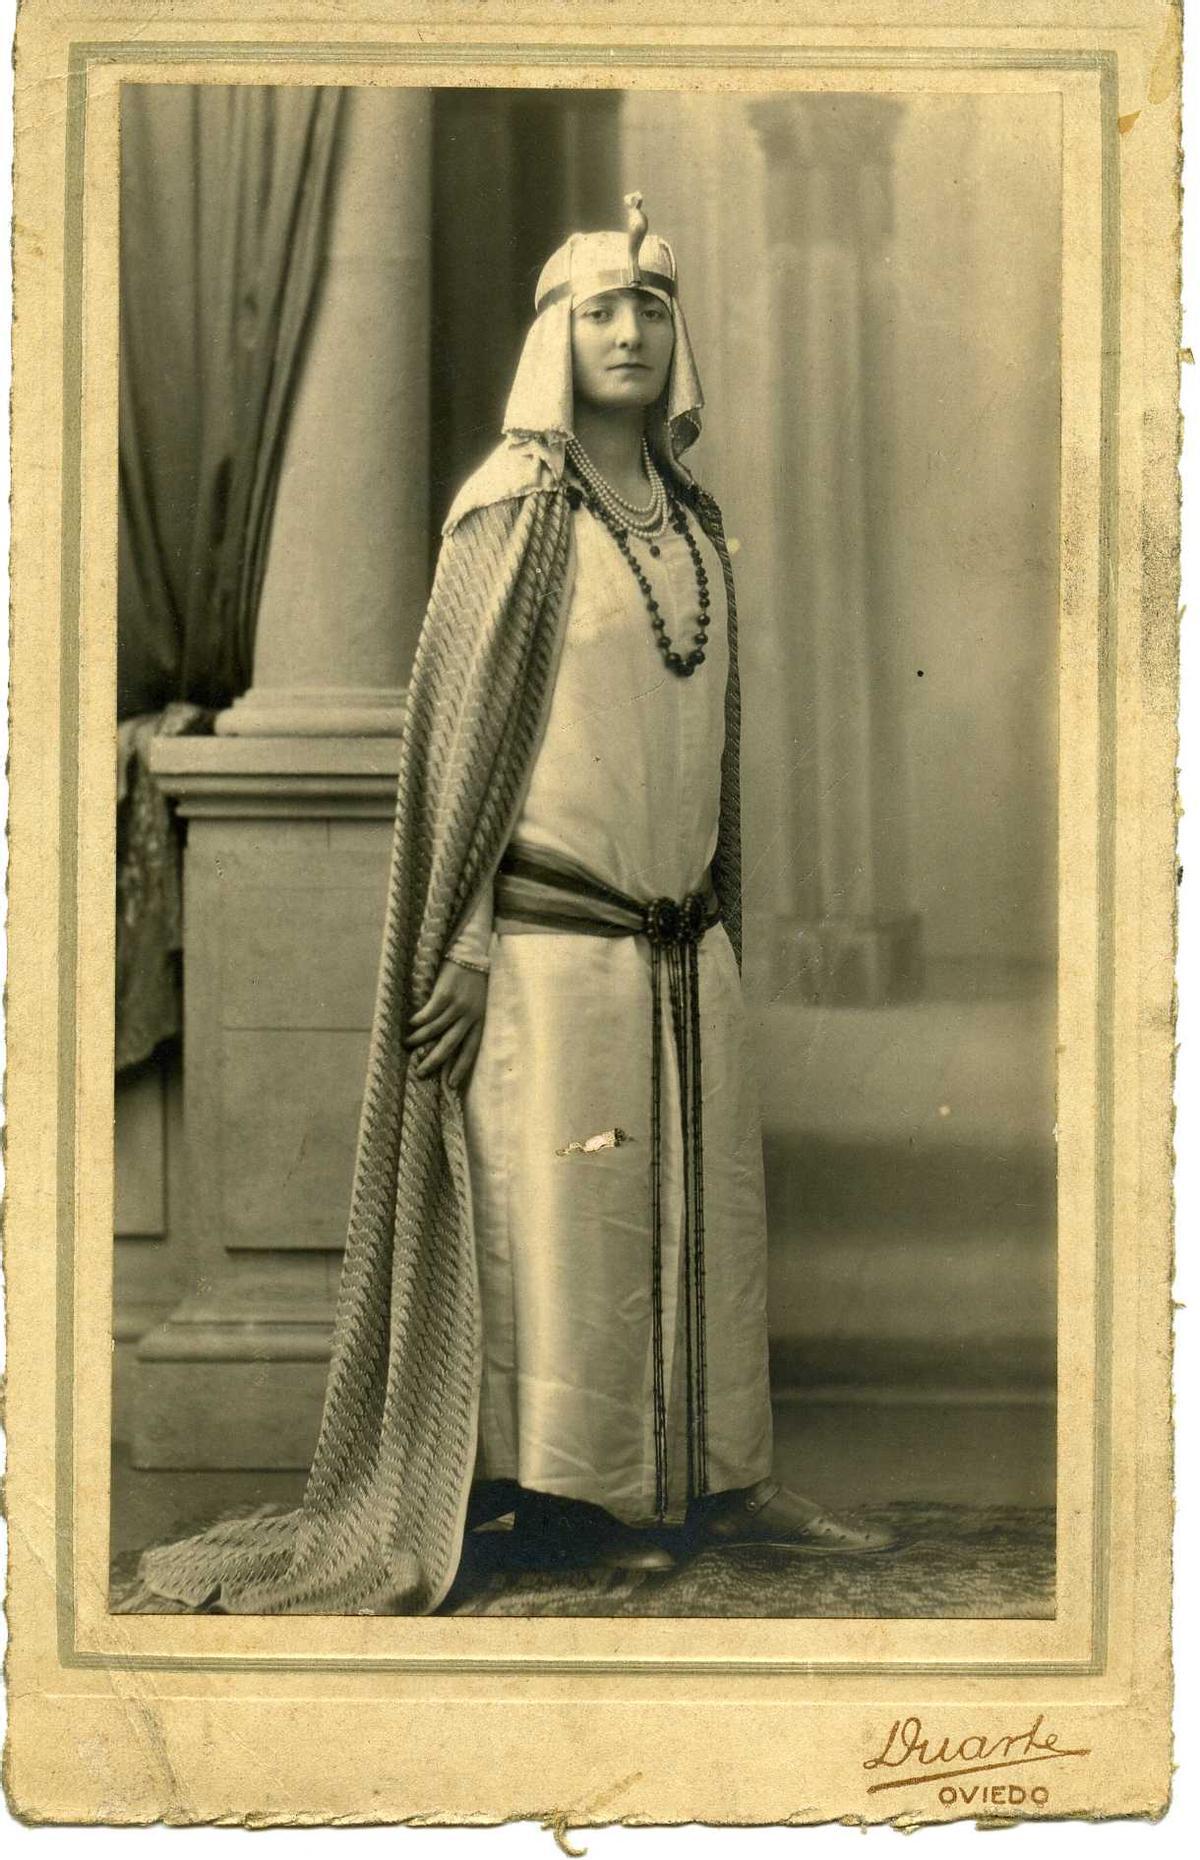 Retrato de Victoria, posiblemente de la familia Riera Solís de Pola de Laviana, disfrazada de egipcia, realizado por Ramón García Duarte el 11 de febrero de 1928. Muséu del Pueblu d'Asturies.